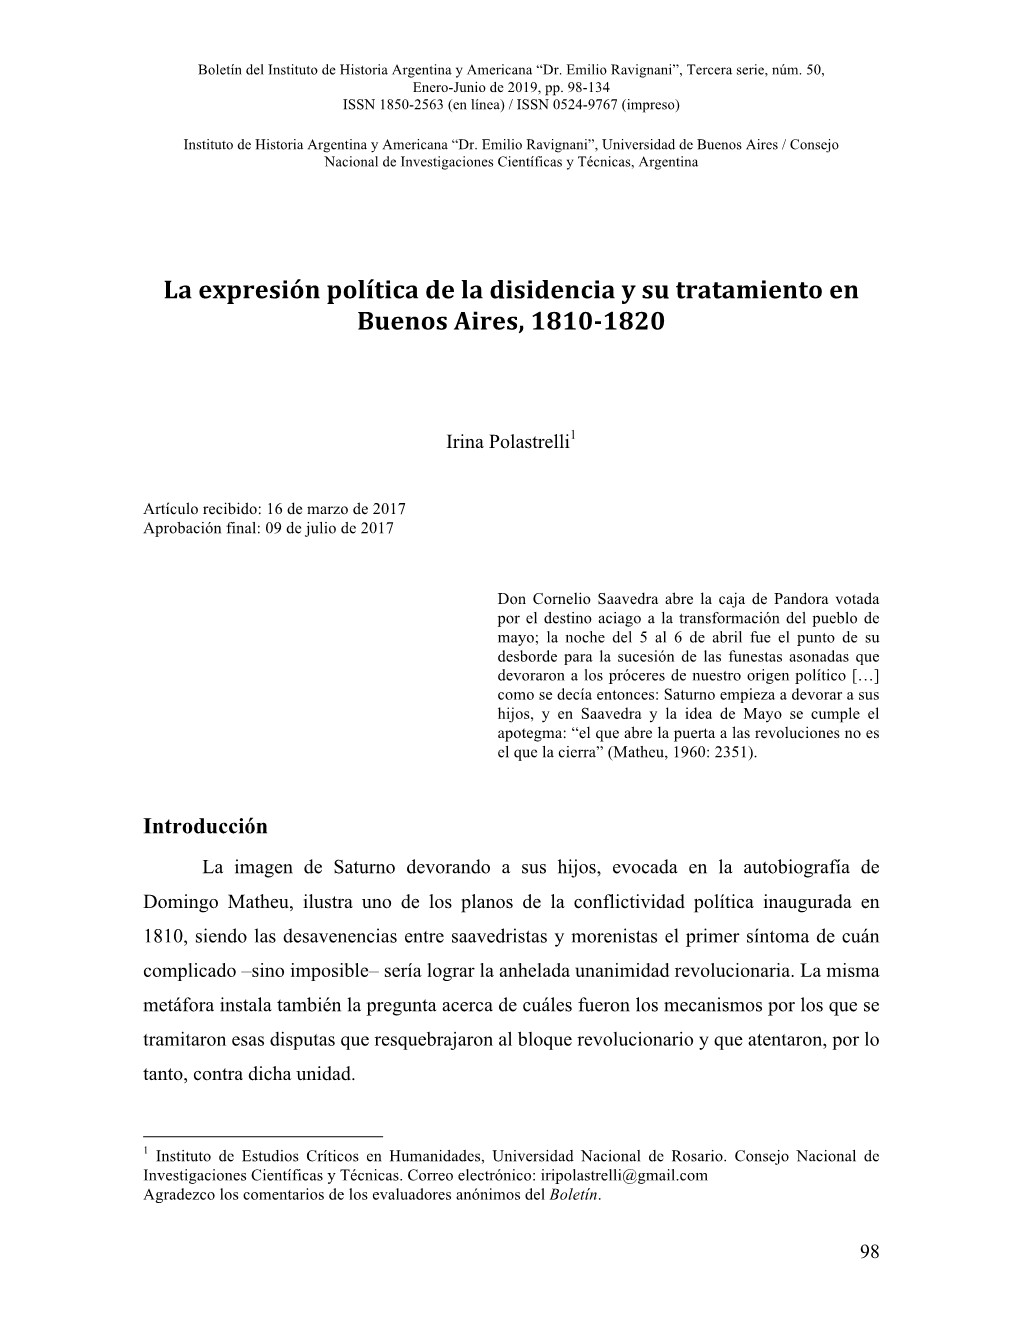 La Expresión Política De La Disidencia Y Su Tratamiento En Buenos Aires, 1810-1820